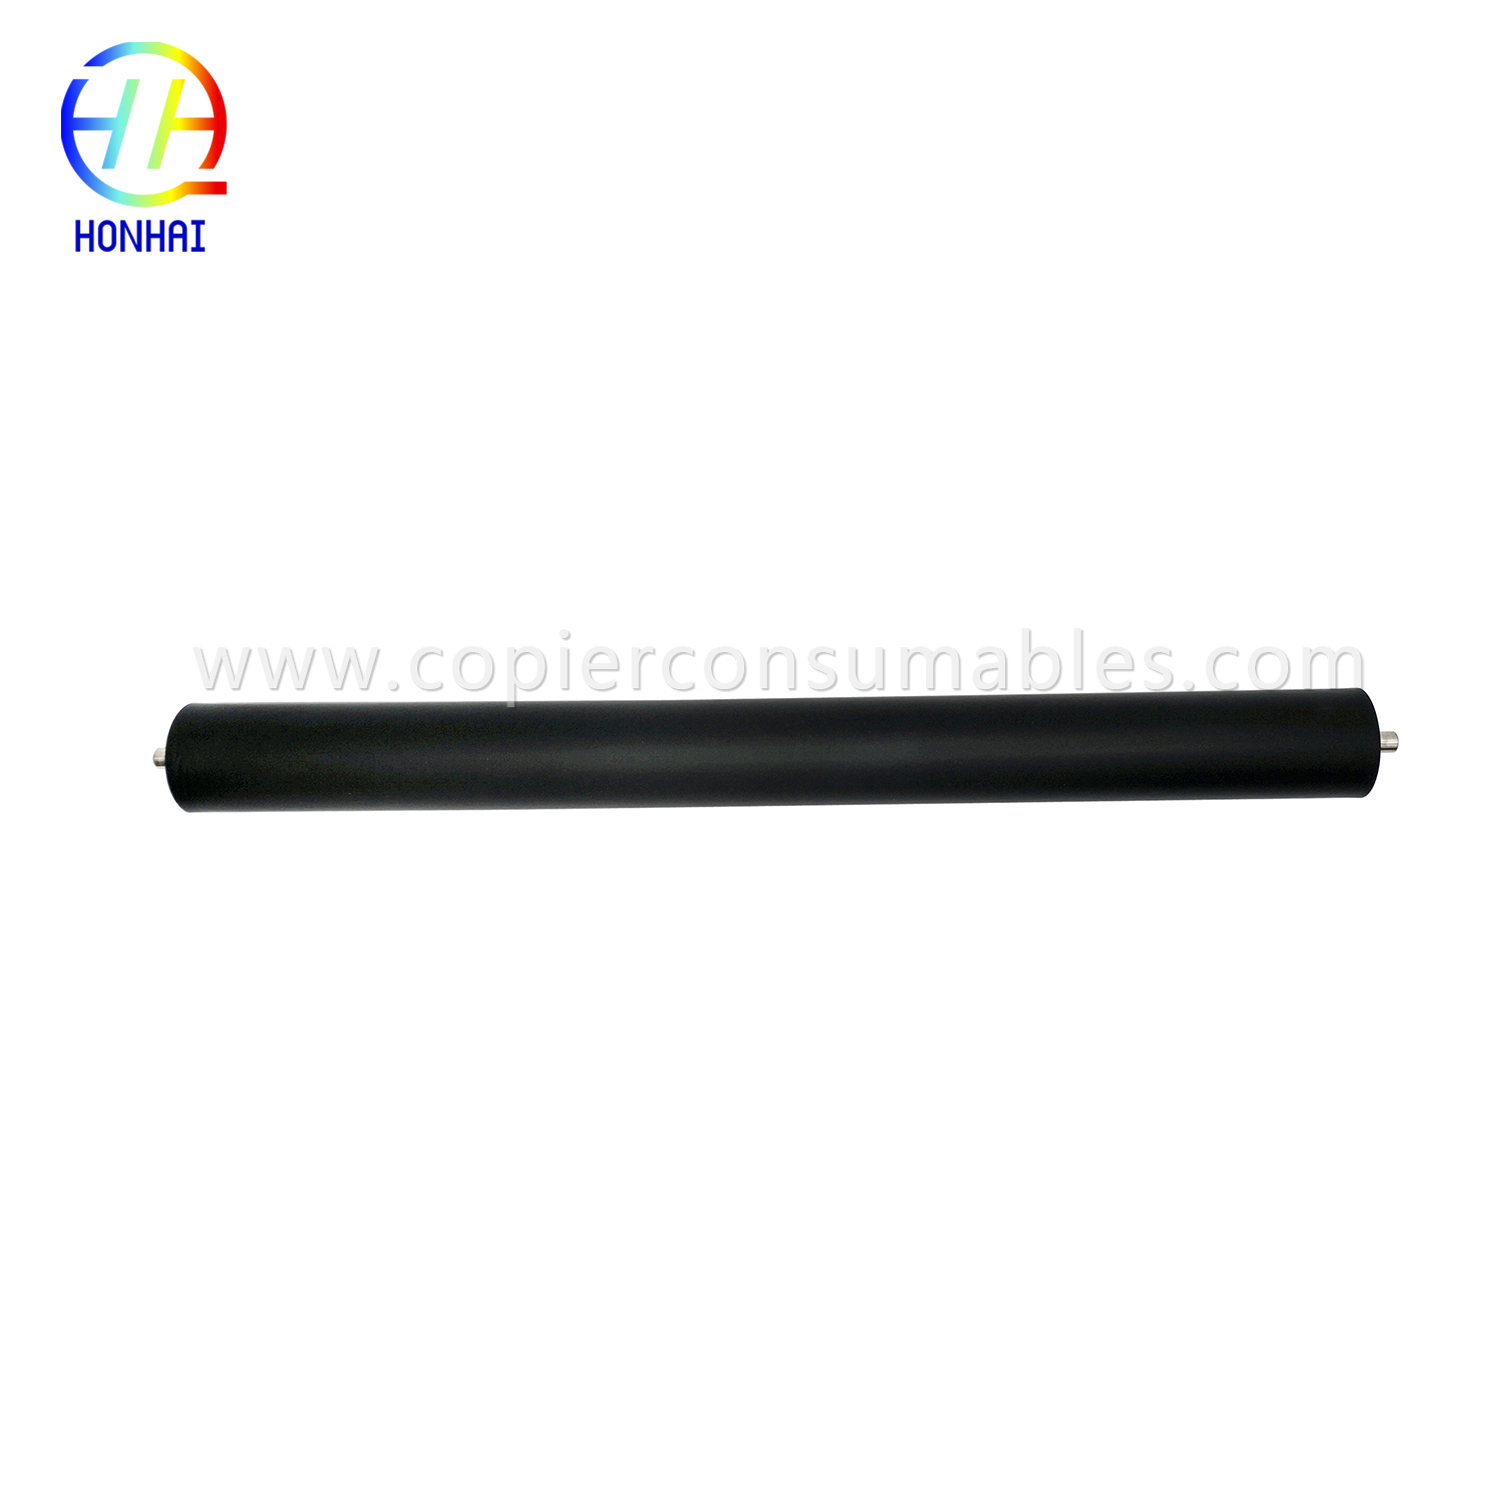 Lower Pressure Roller yeKonica Minolta Bizhub Di2510 Di3510 Bizhub200 250 350 Sleeve yeSponge